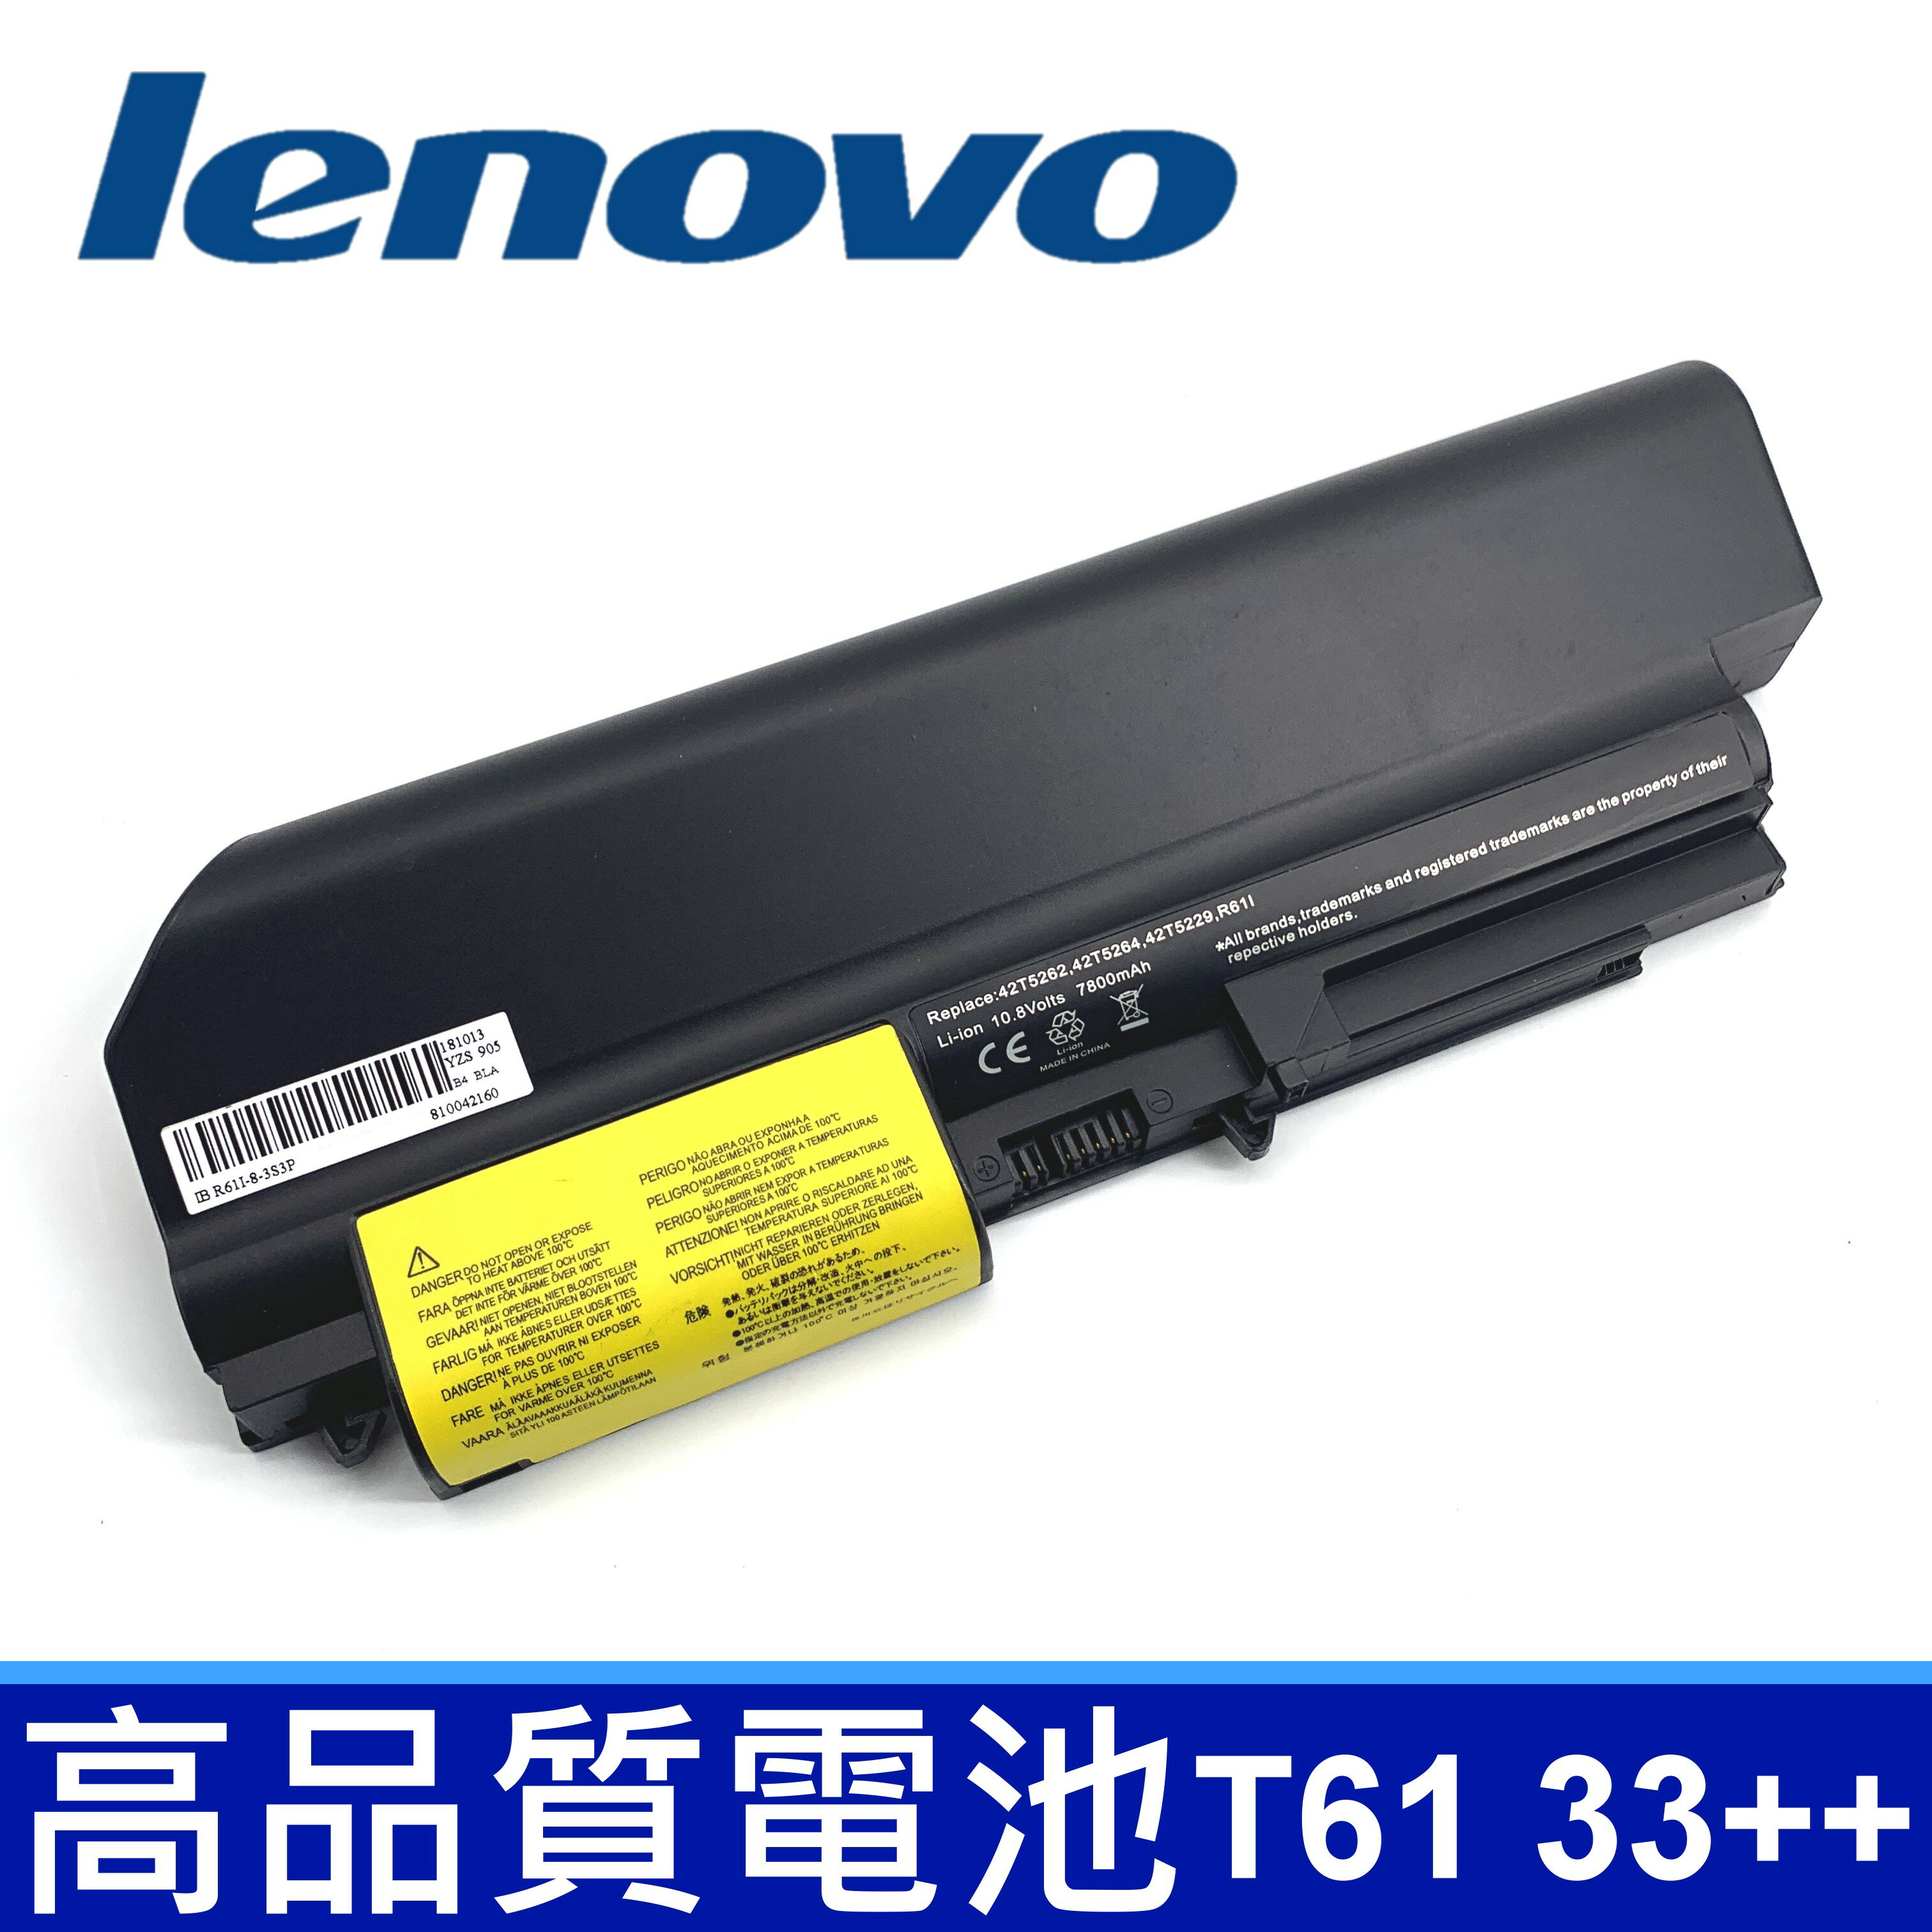 LENOVO T61 9芯 原廠規格 電池 42T4530 42T4532 42T4548 42T4645 42T5225 42T5227 42T5262 42T5264 42T4552 R61 R61E R61P R61i T61 T61P T61U T400 R400 R500 SL400 SL500